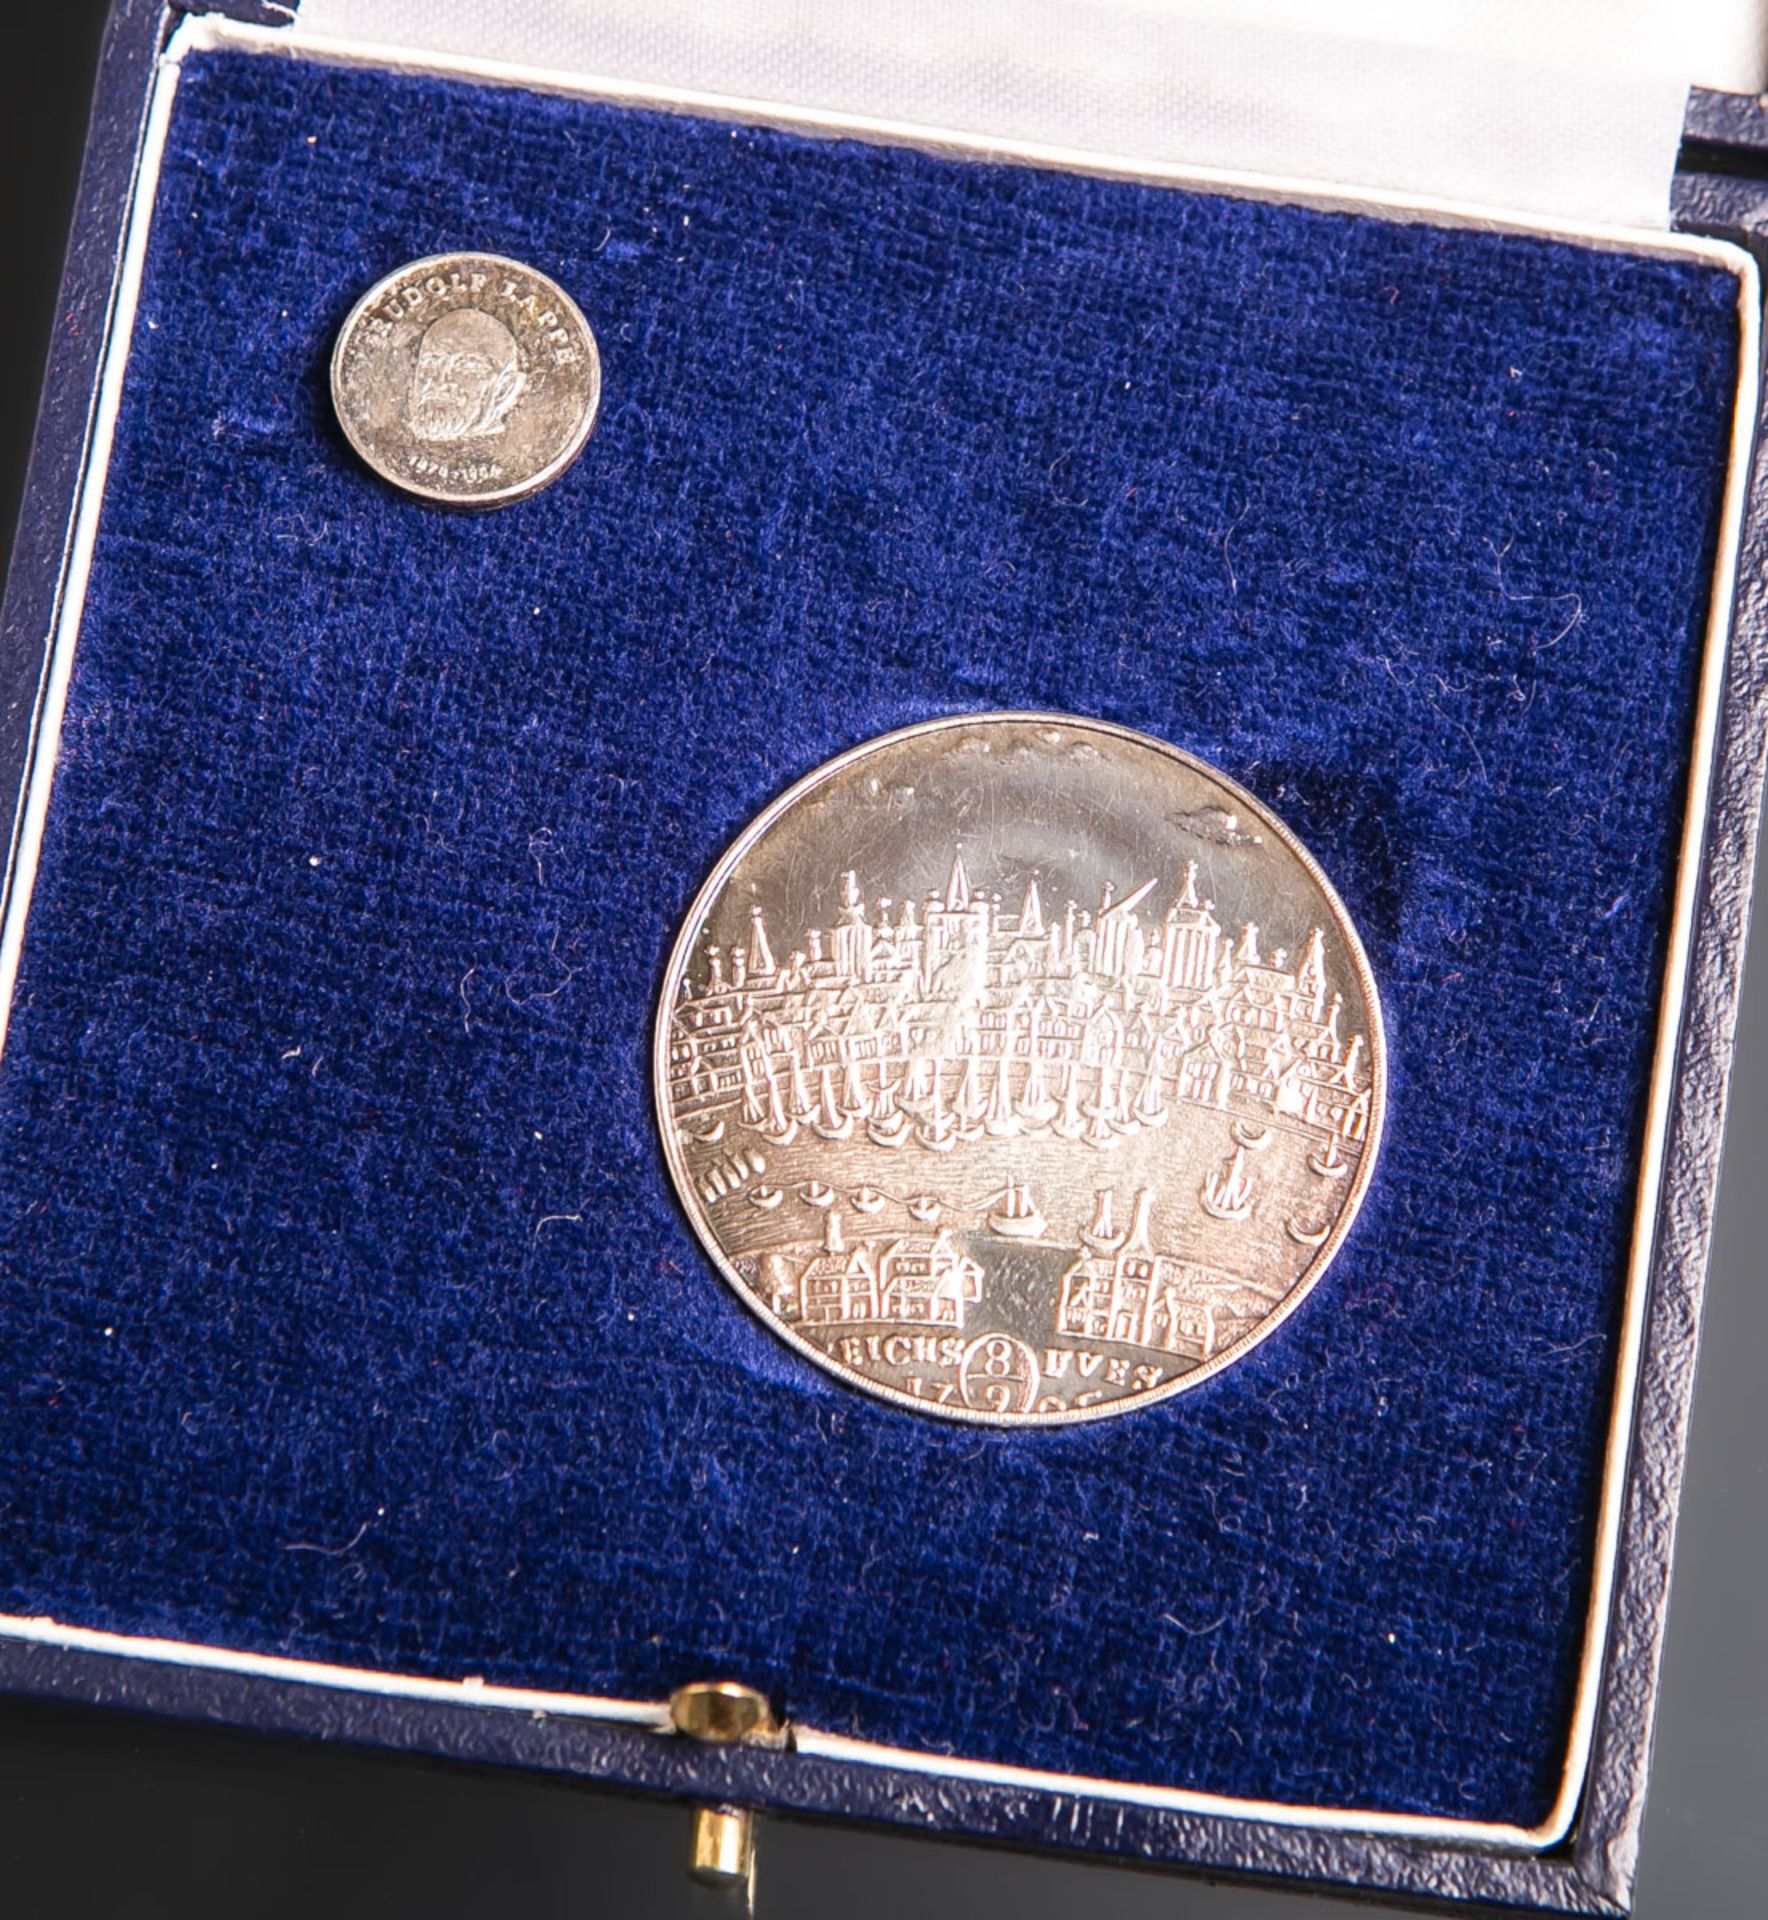 2-teiliges Set von Medaille und Nadel "Rudolf Lappe"